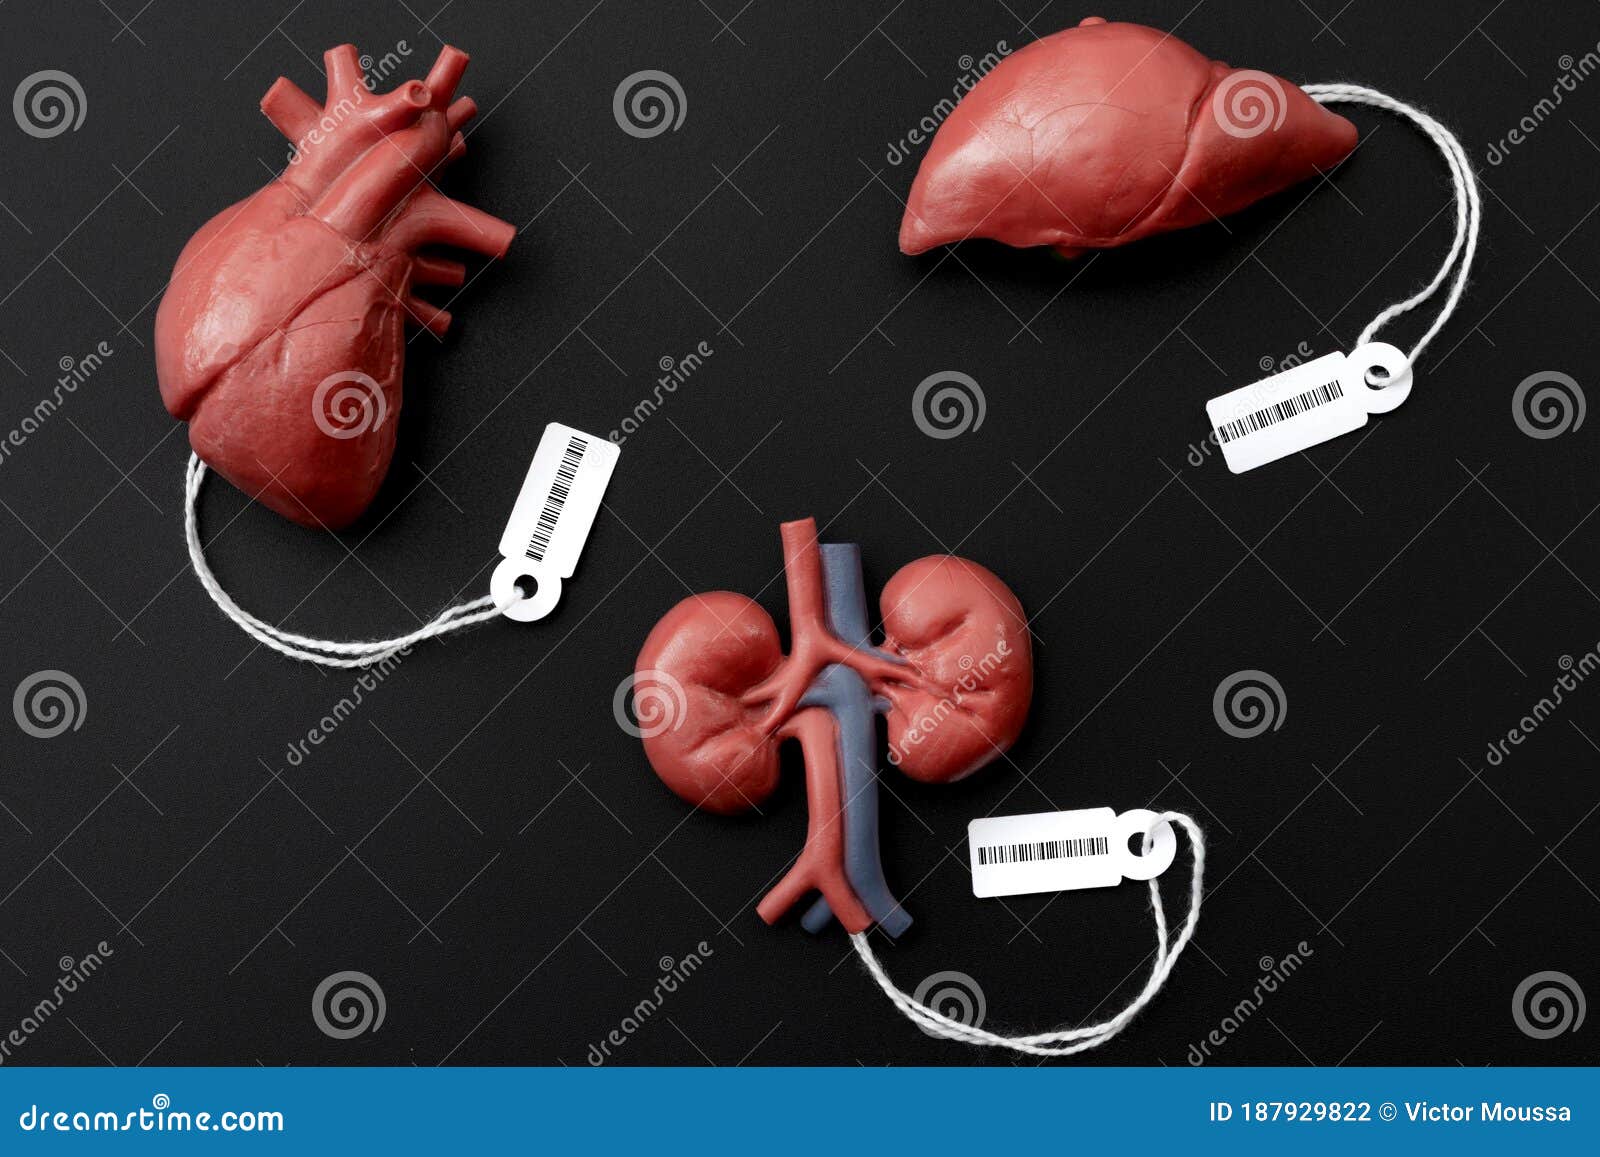 real human organs